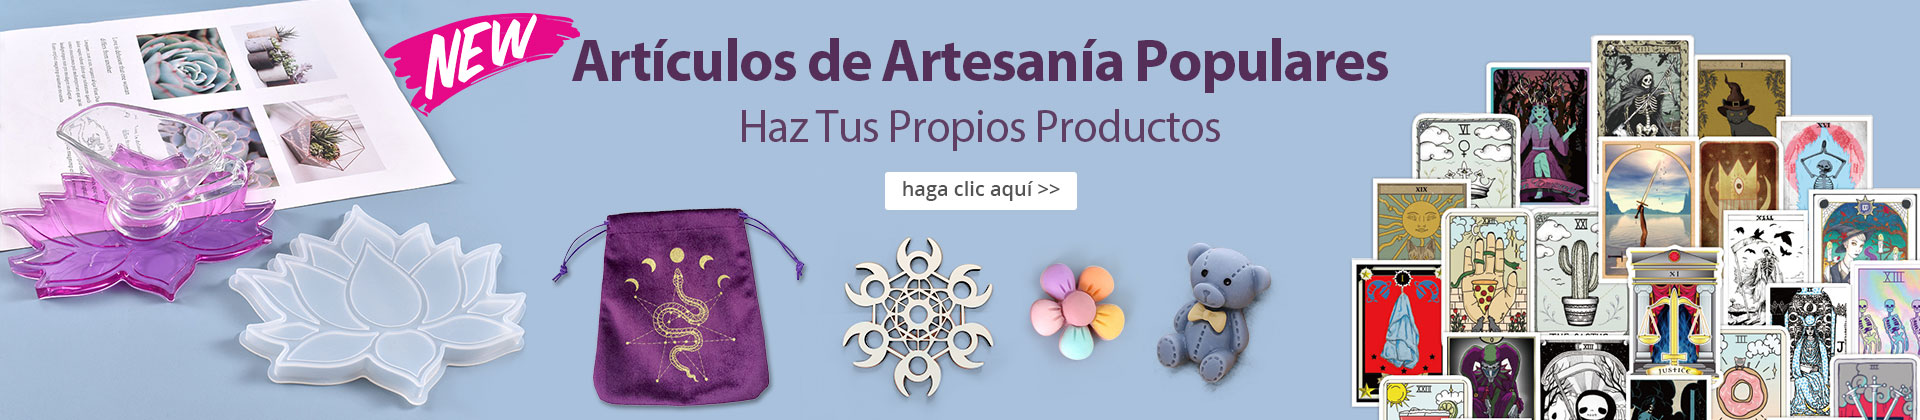 Artículos de Artesanía Populares Haz Tus Propios Productos haga clic aquí >>